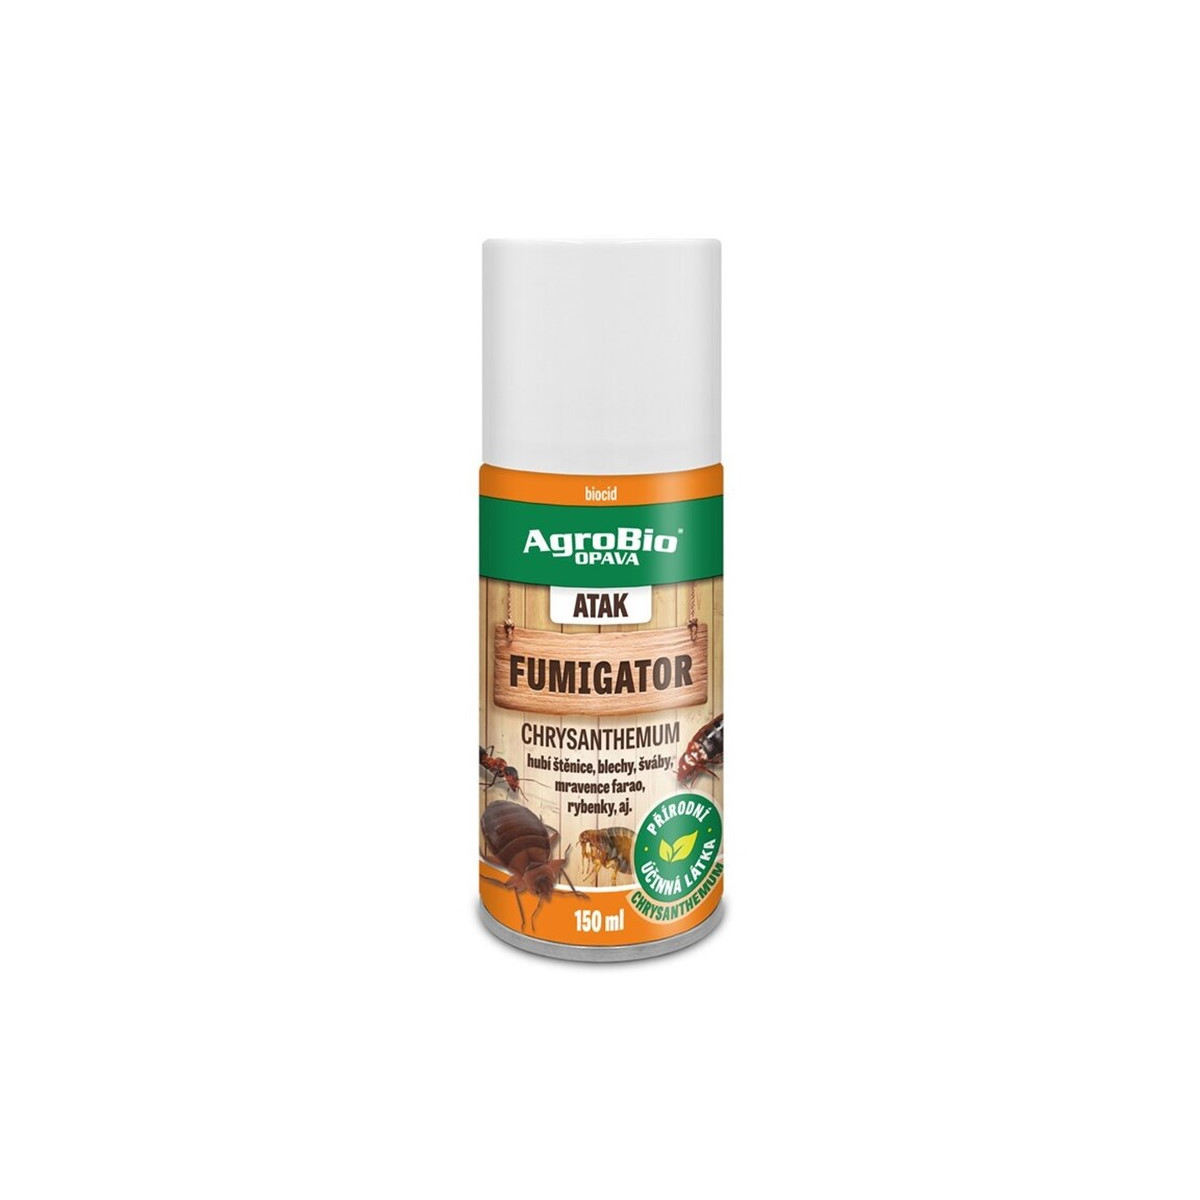 ATAK Fumigator - proti škůdcům - AgroBio - 150 ml